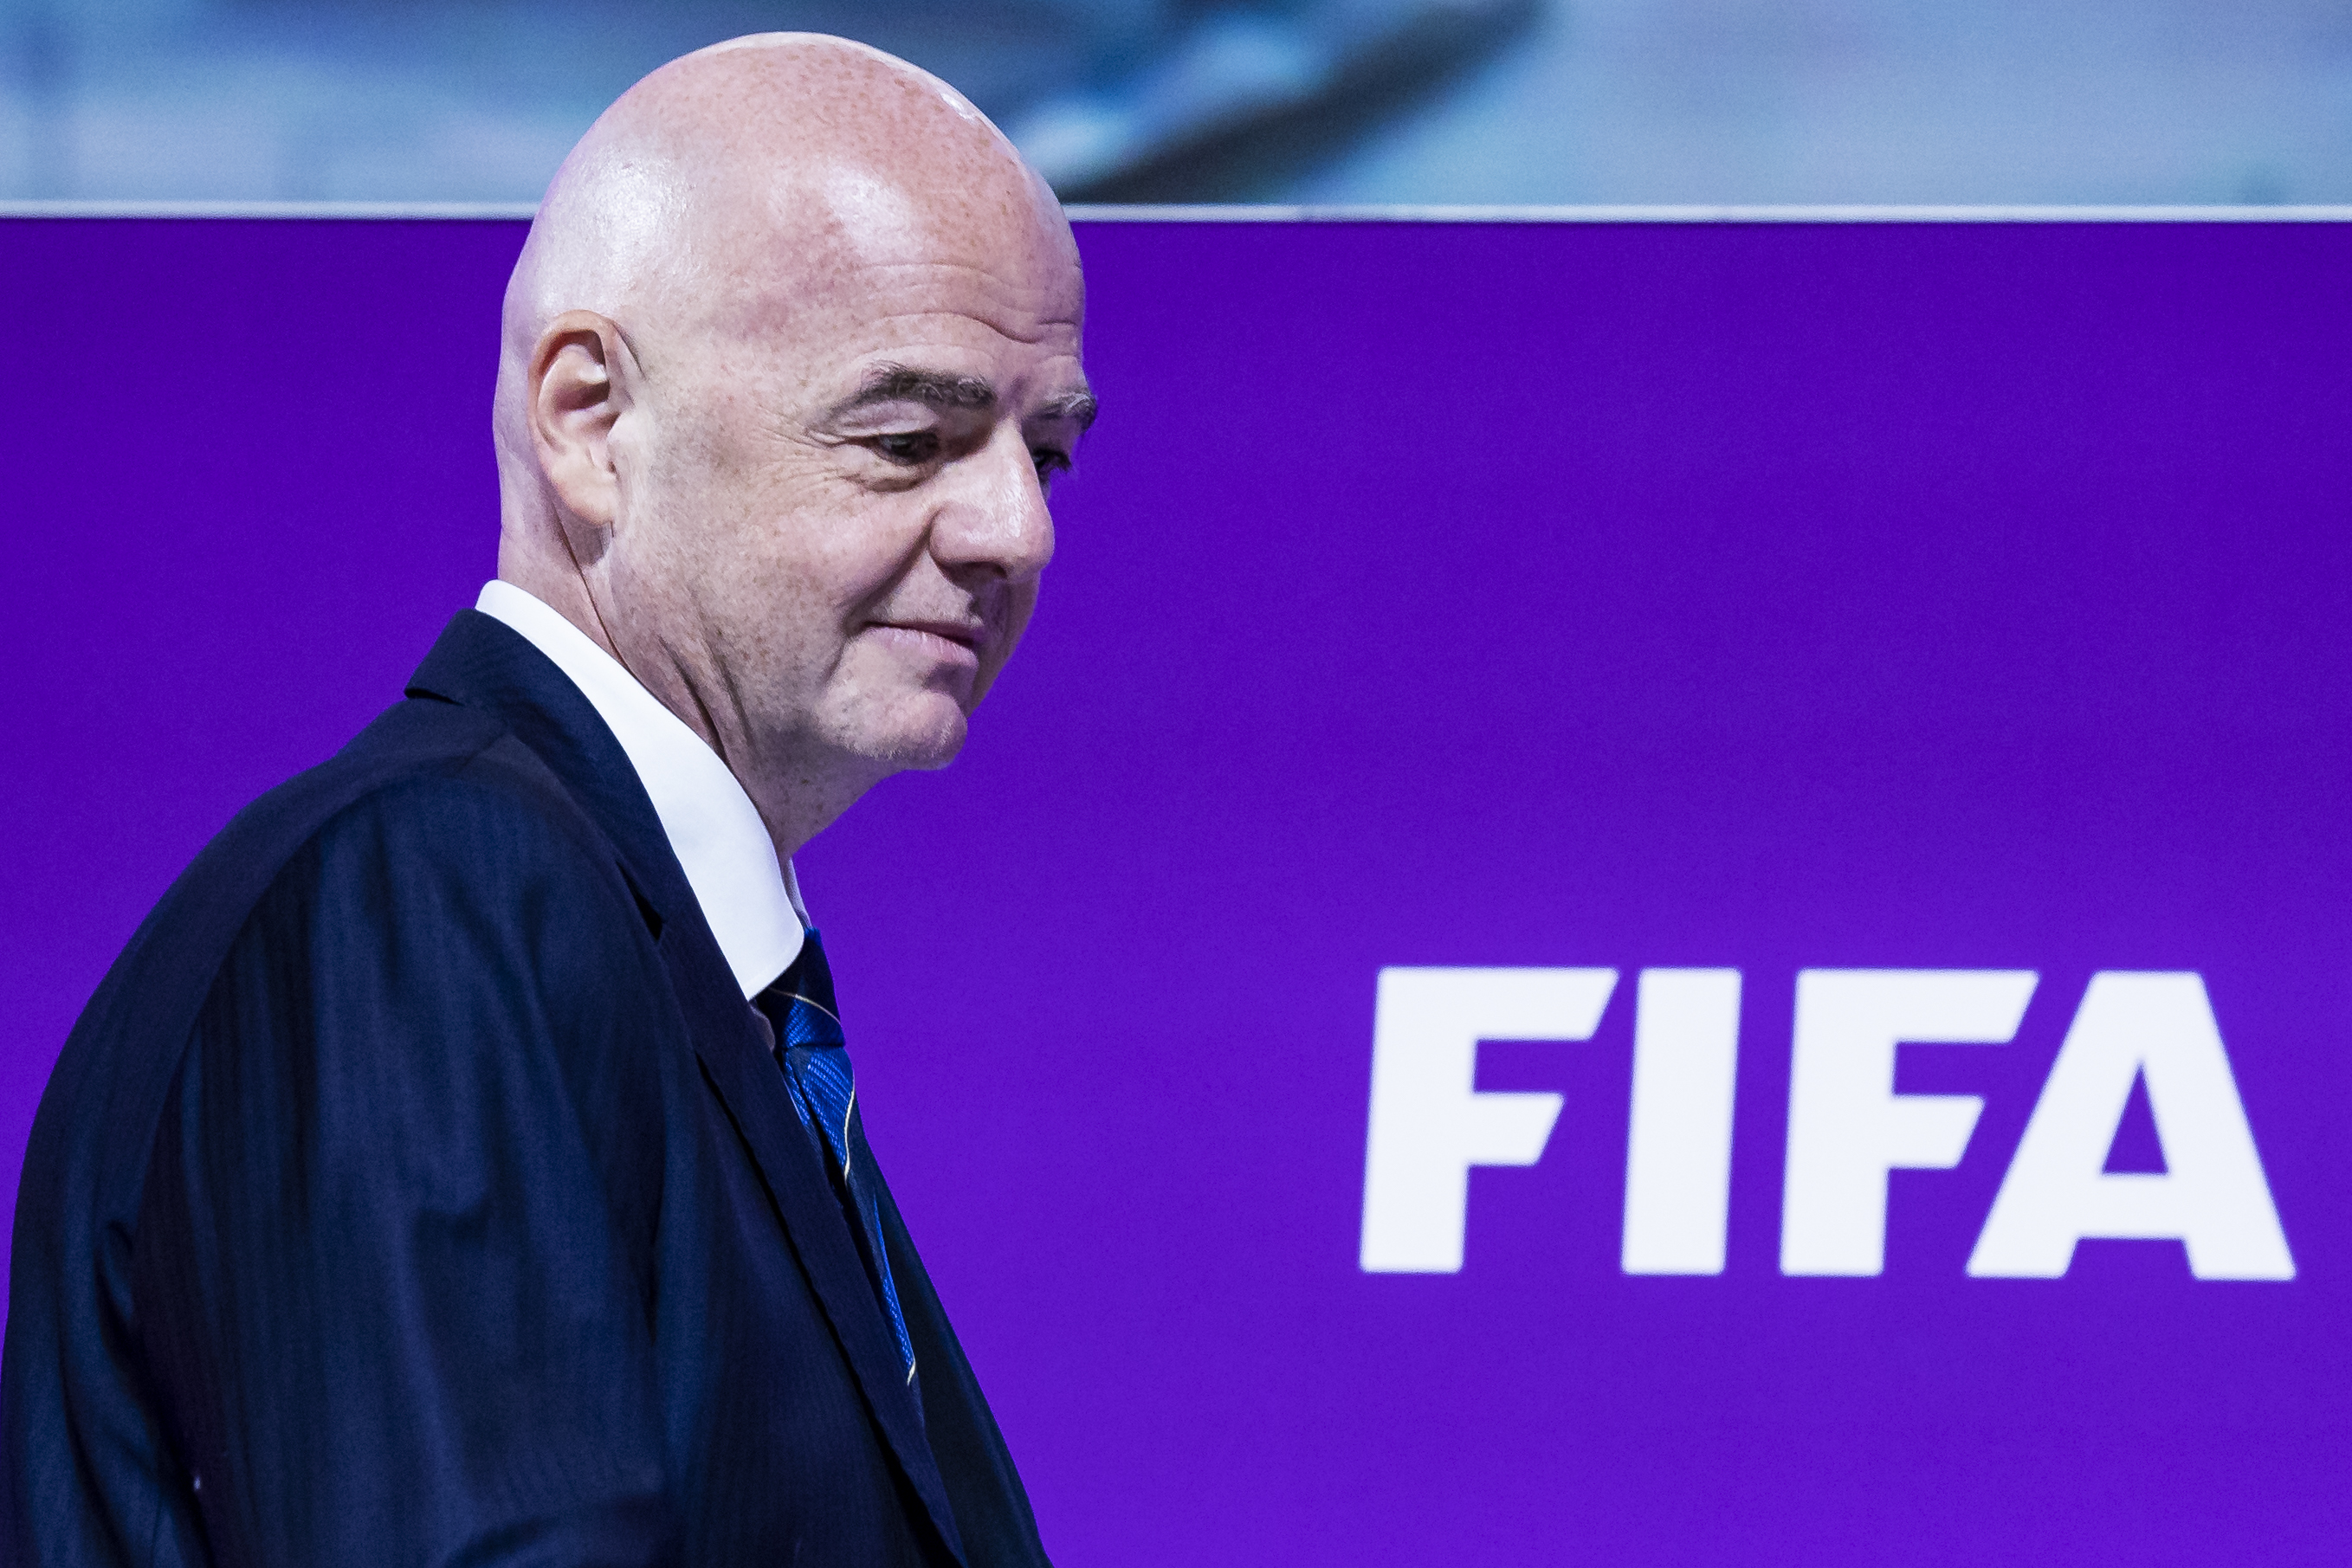 El presidente de la FIFA, Gianni Infantino.